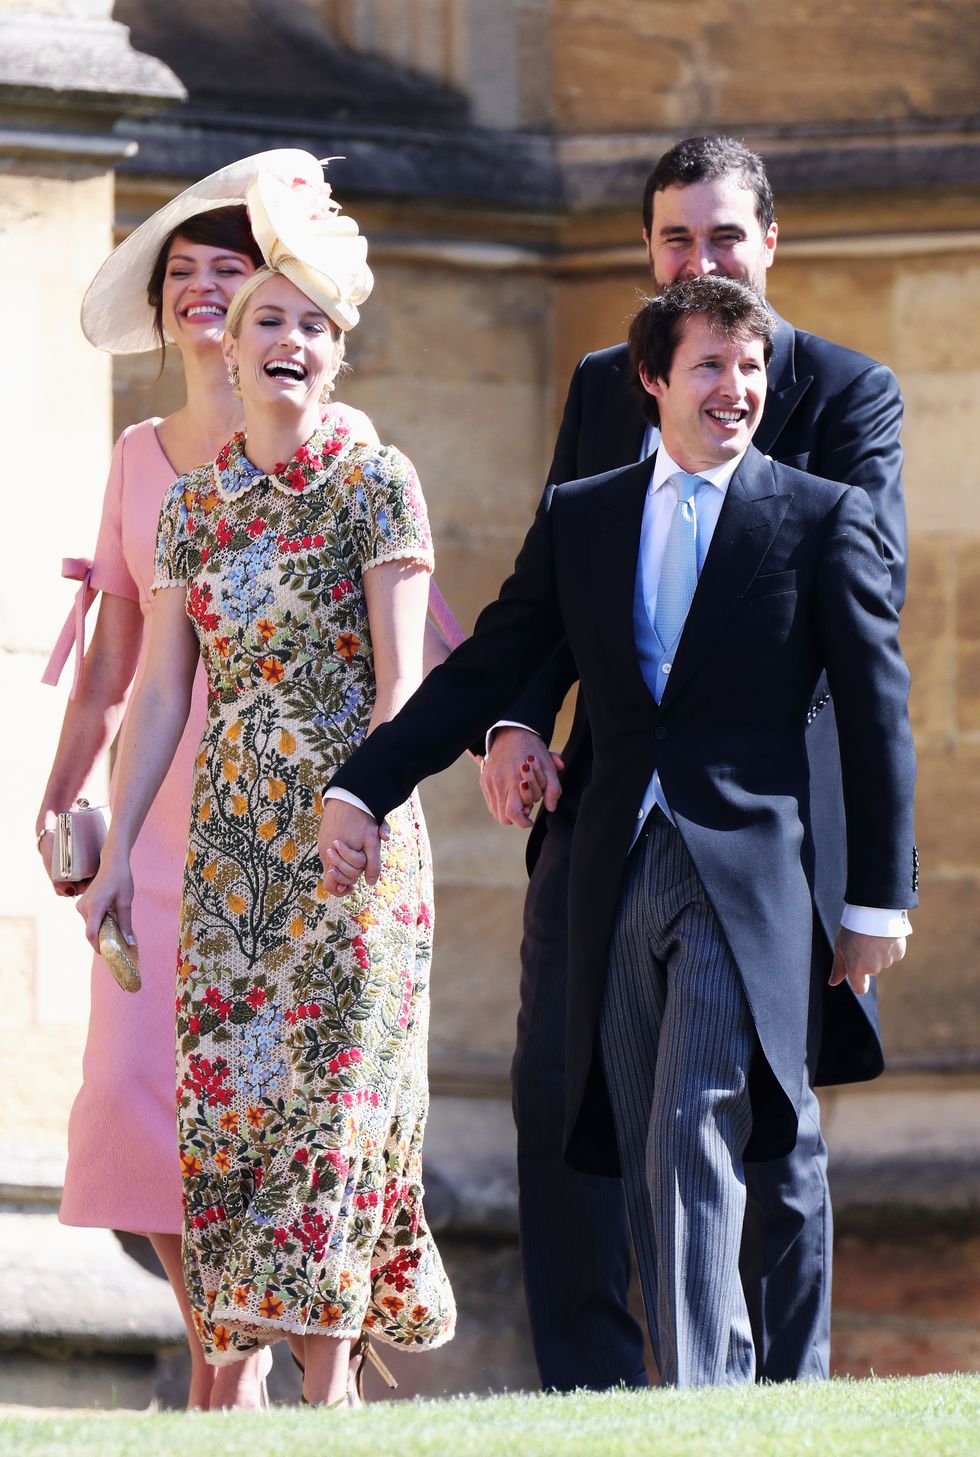 哈利王子,梅根馬克爾結婚,薩塞克斯公爵,皇室婚禮,哈梅婚禮,貝克漢,喬治克隆尼